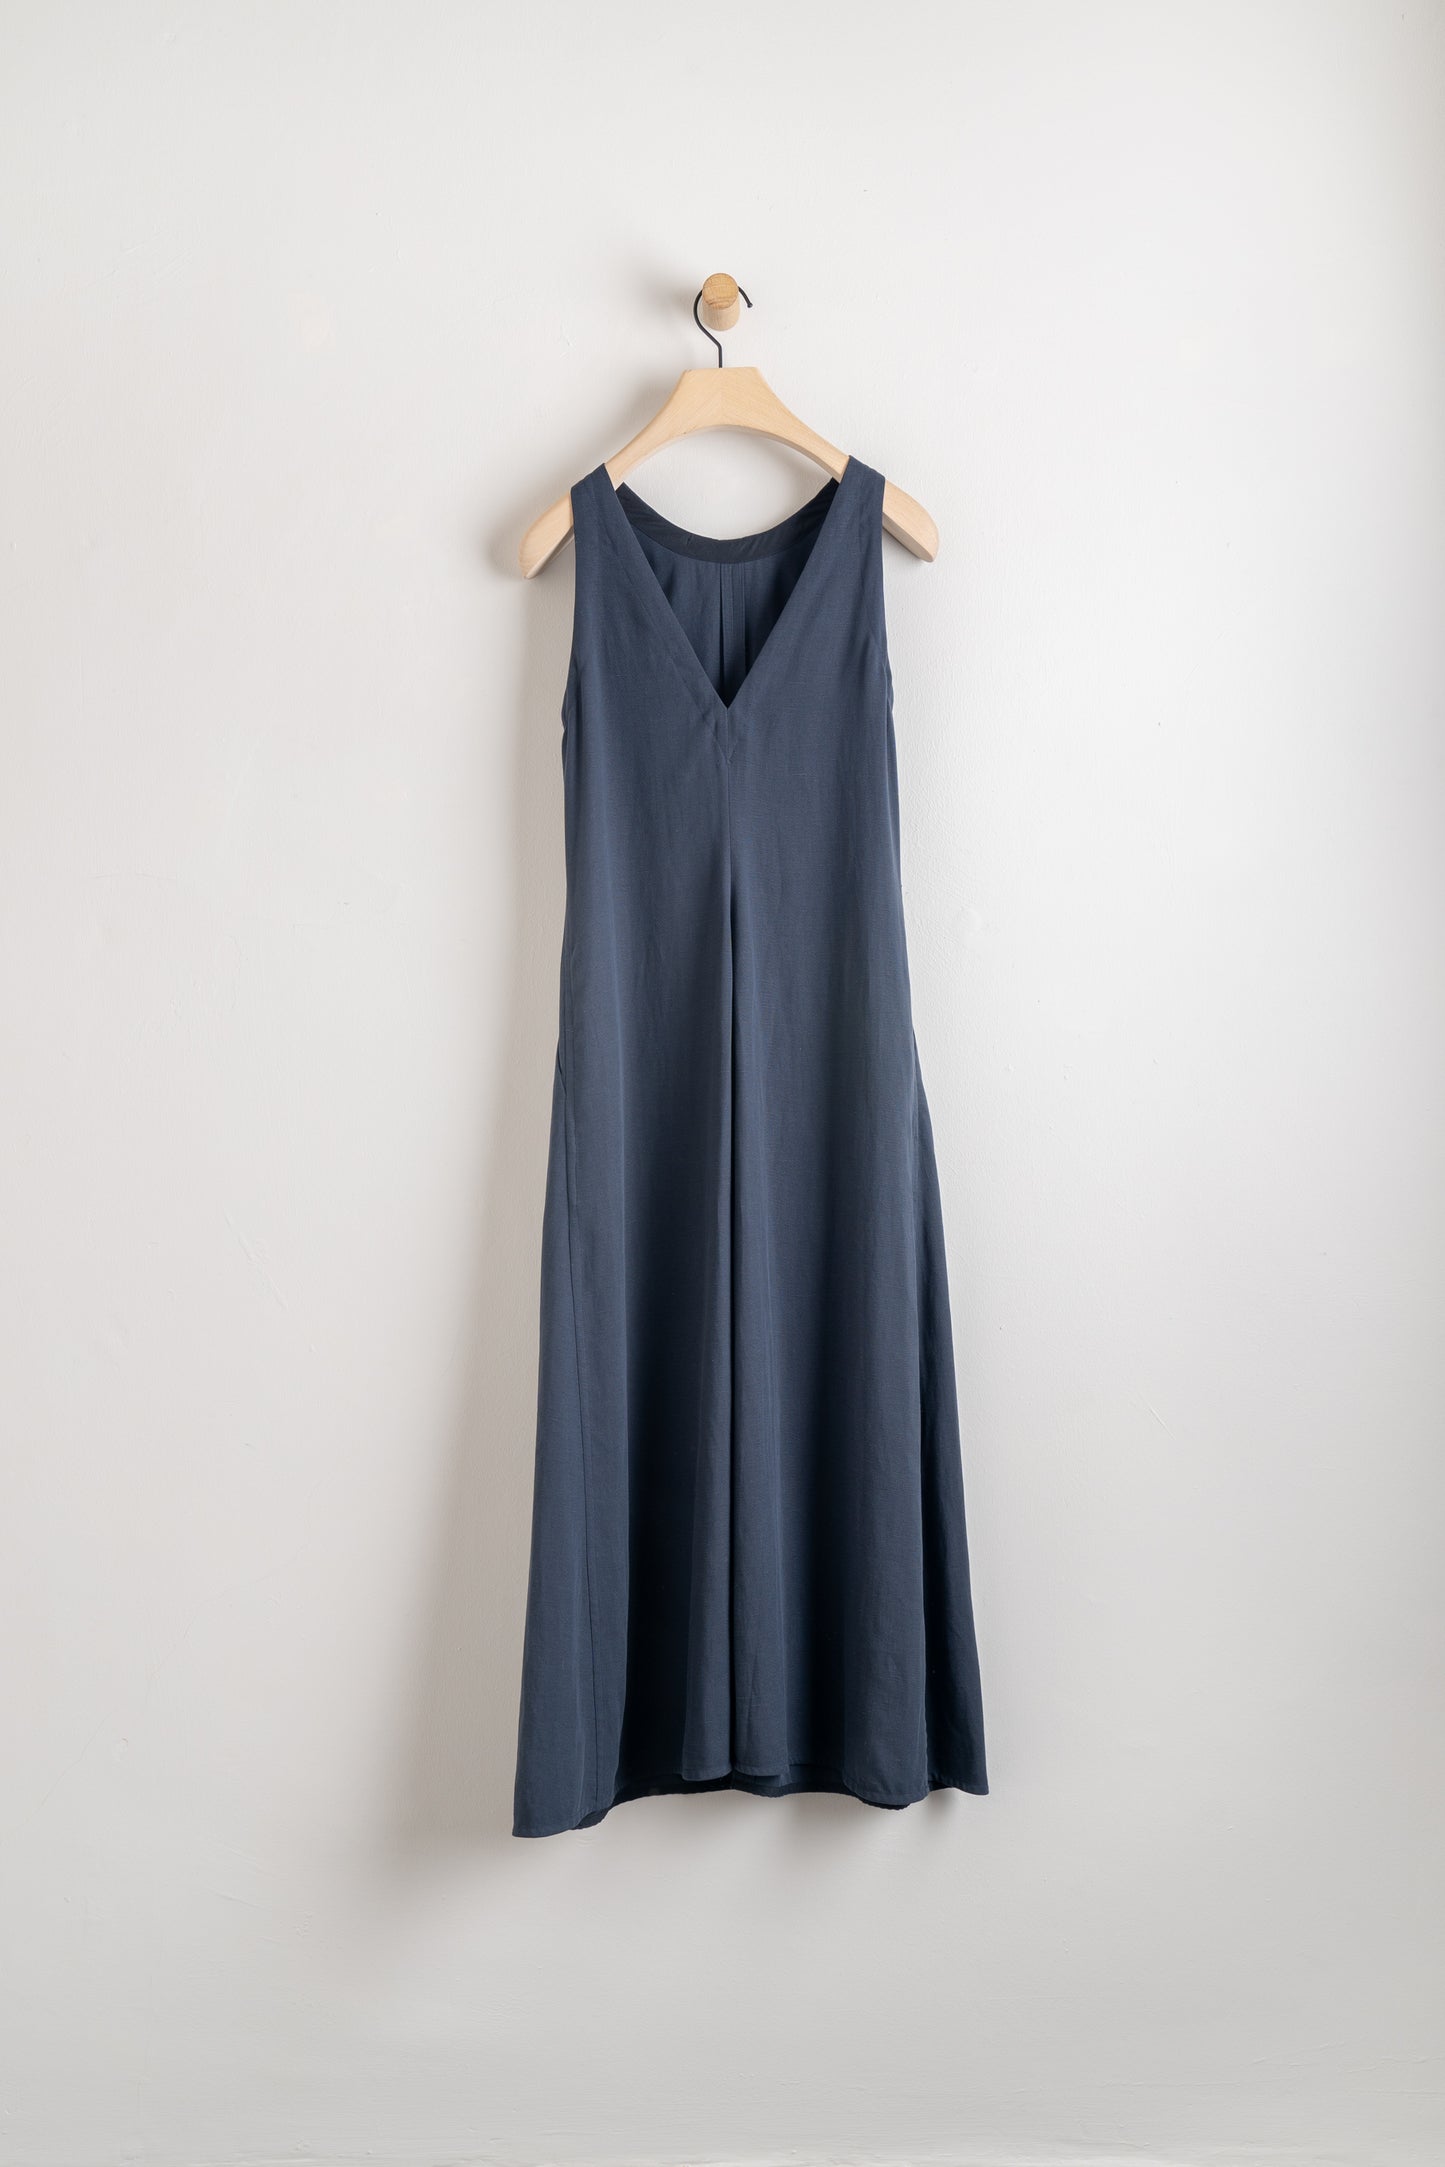 Soder Studio Linen Back V Neck Dress